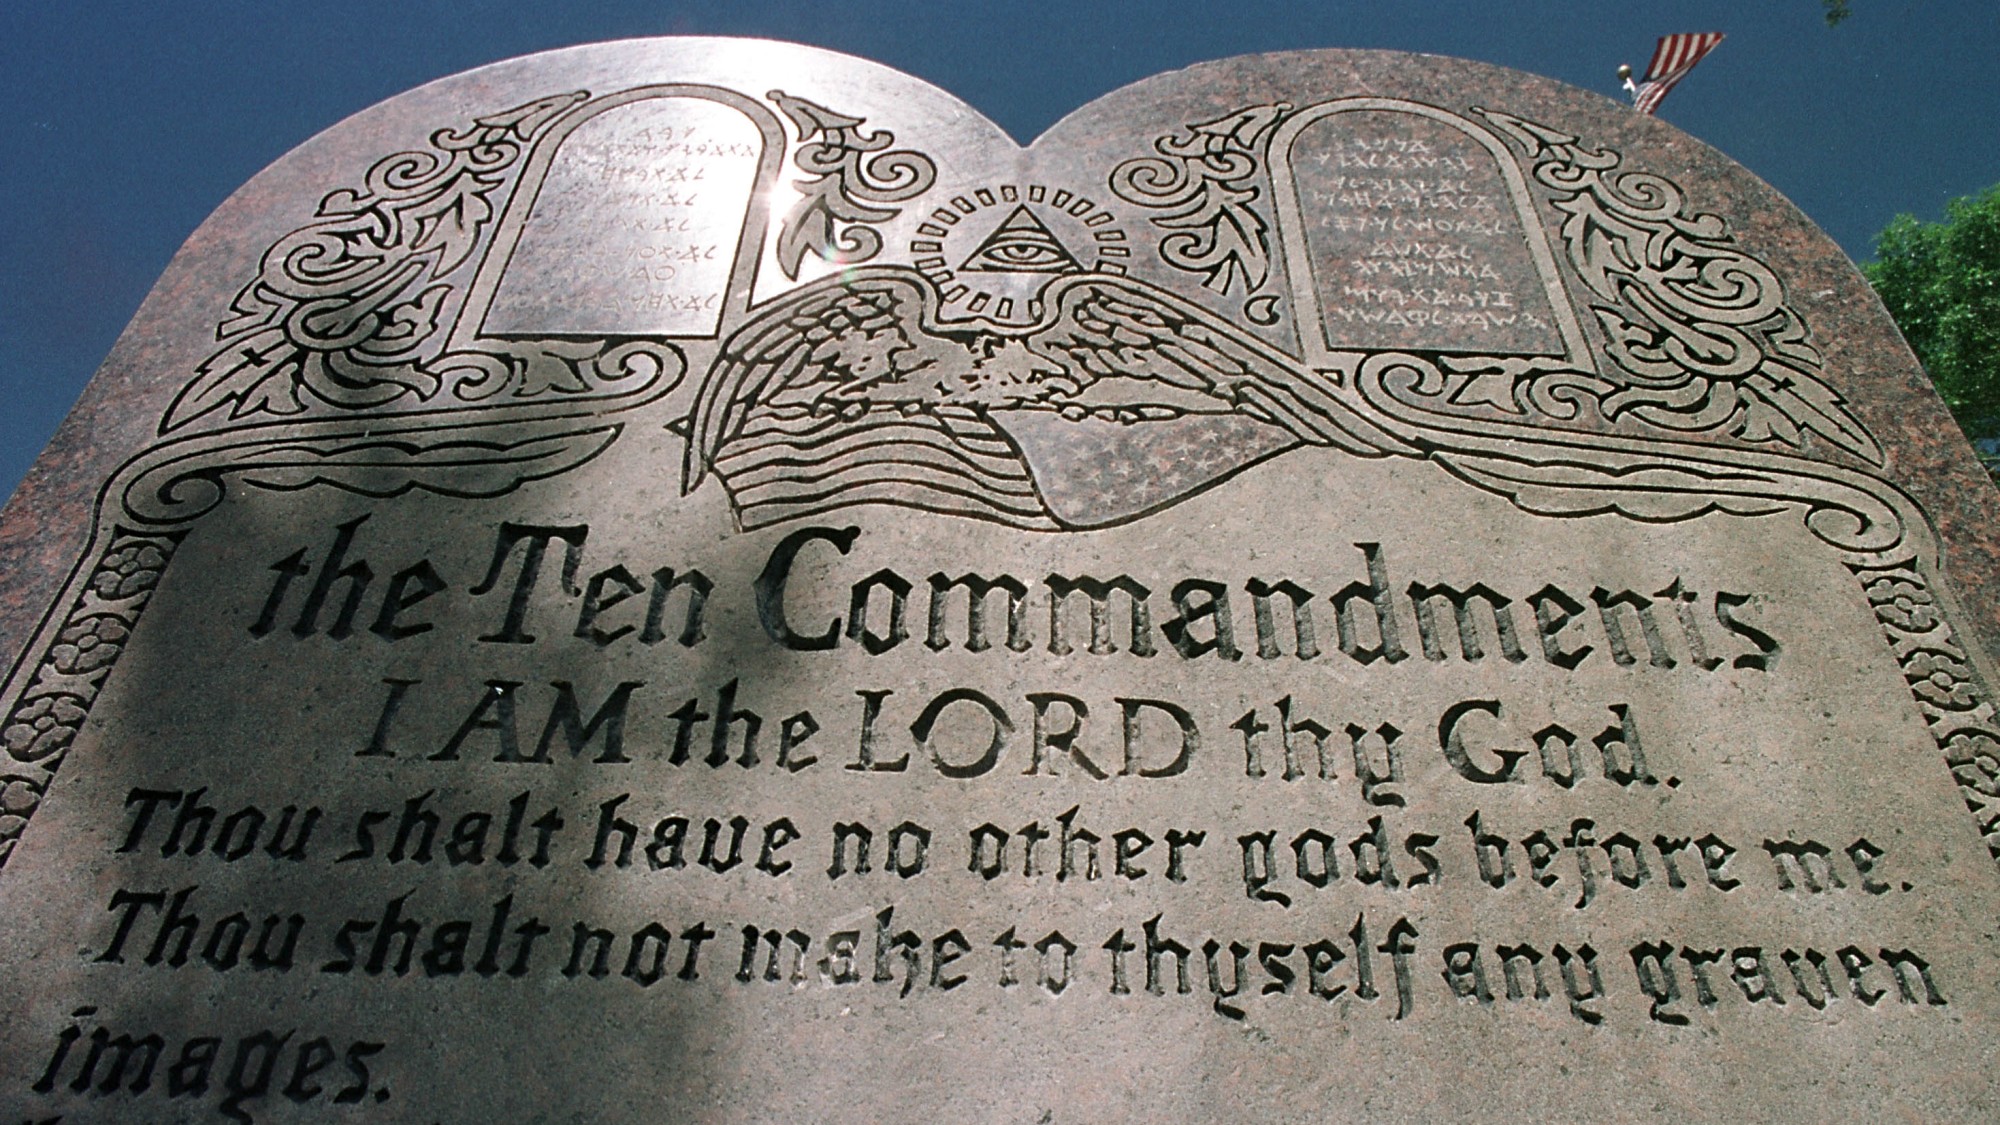 Louisiana Mandates Ten Commandments Posters in Public Schools, Igniting Legal Controversy